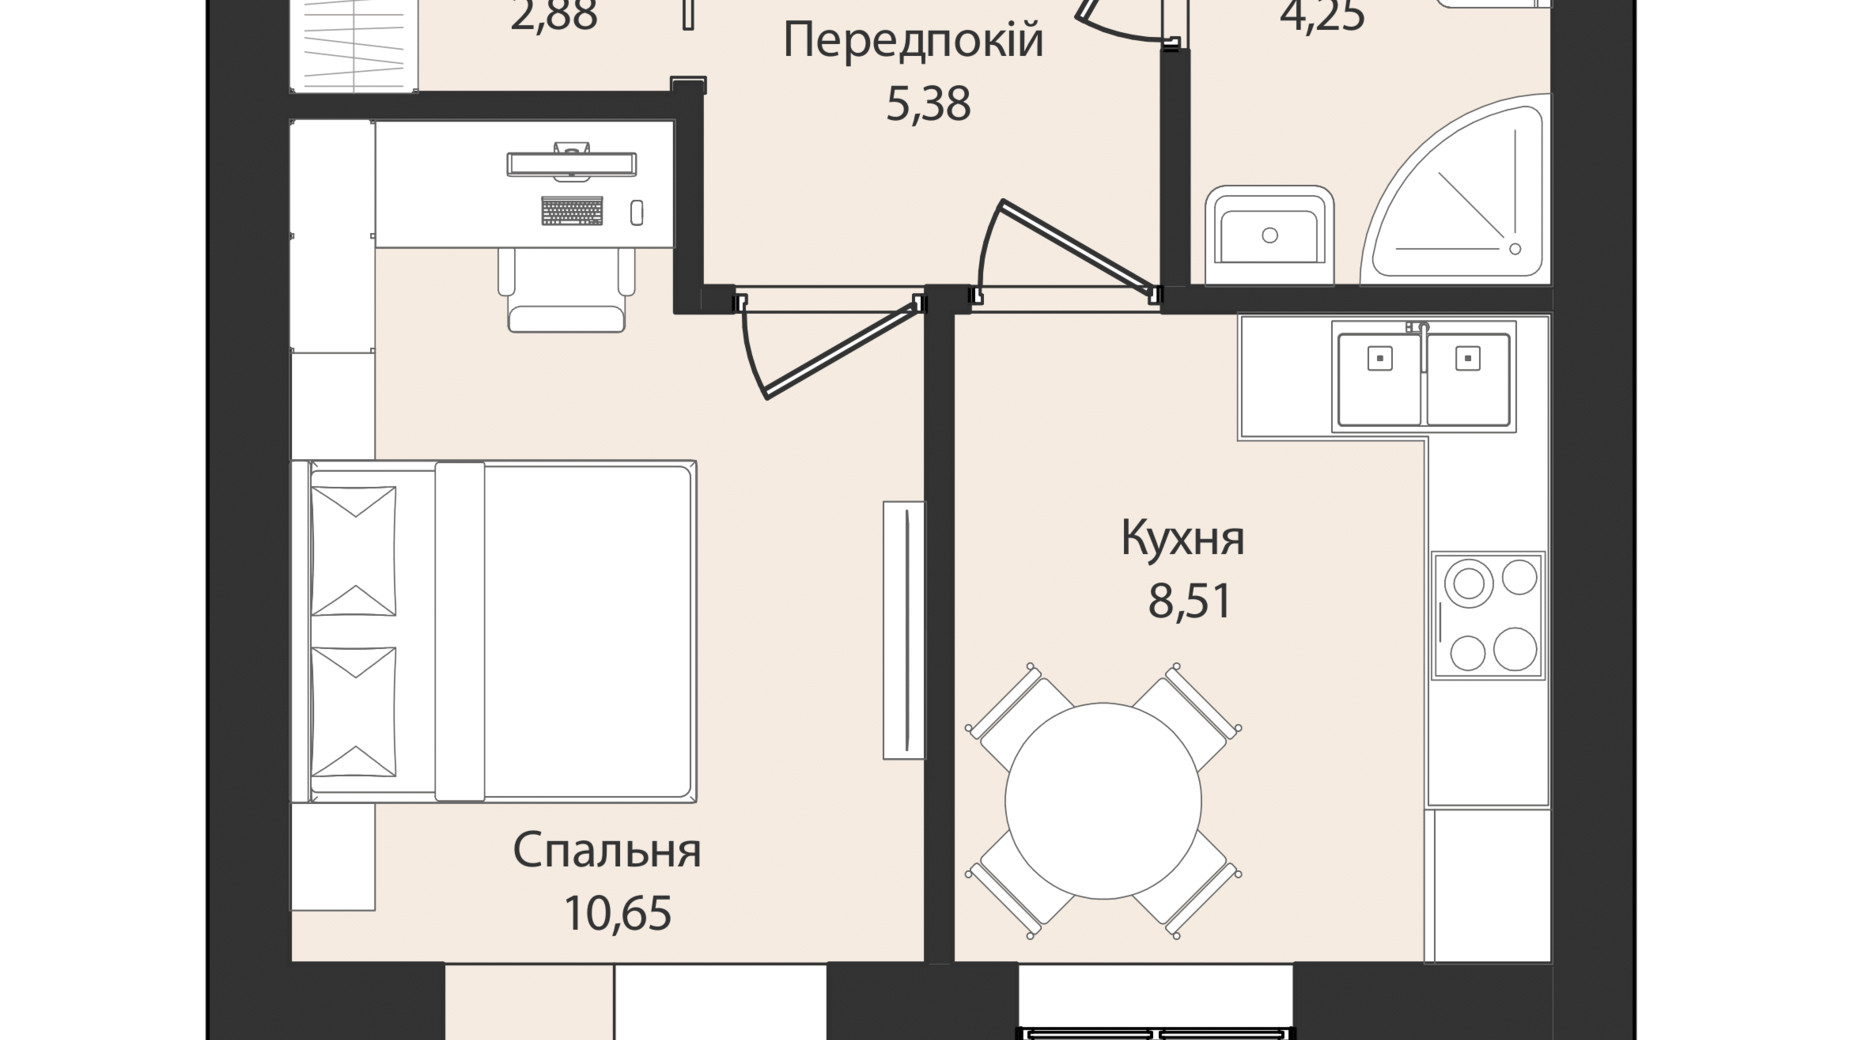 Планировка 1-комнатной квартиры в Клубный дом Левобережный 41.5 м², фото 649385